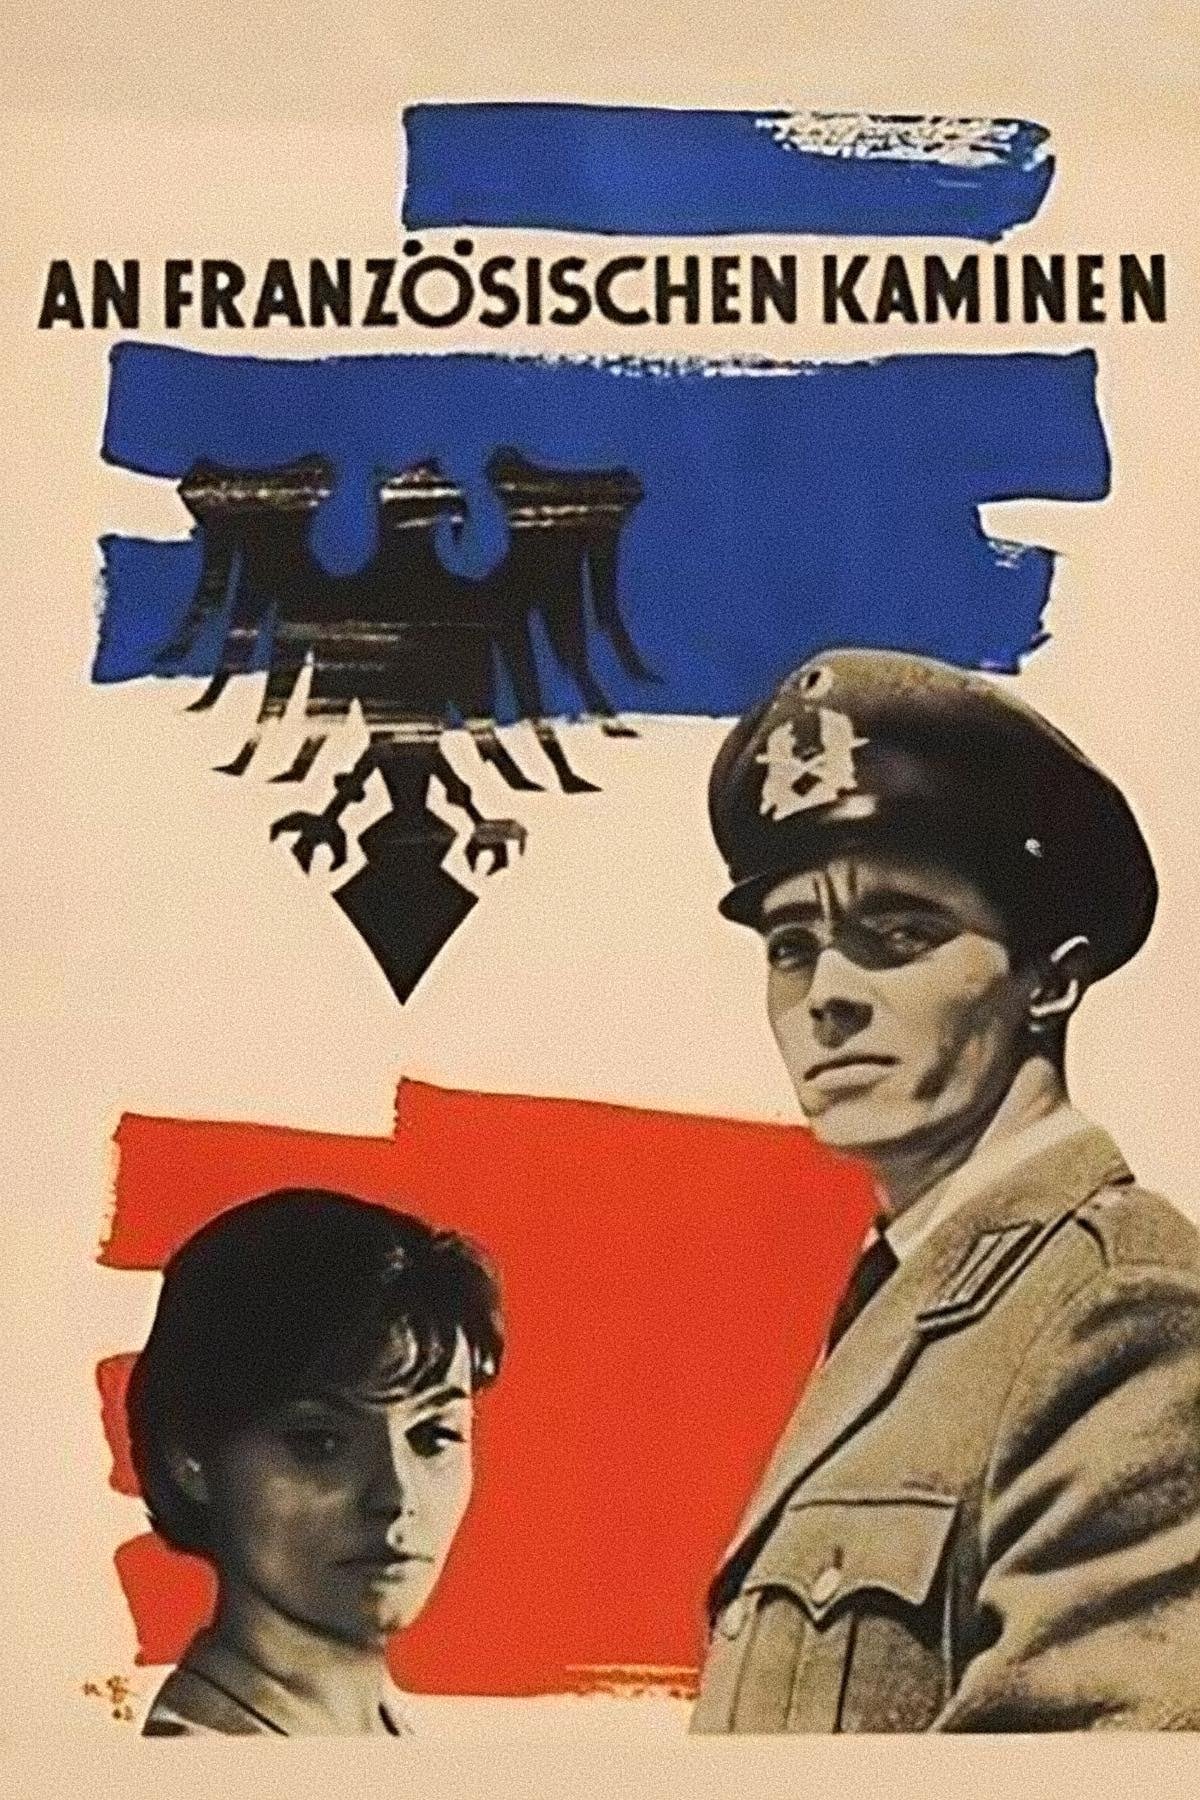 An französischen Kaminen (1962)